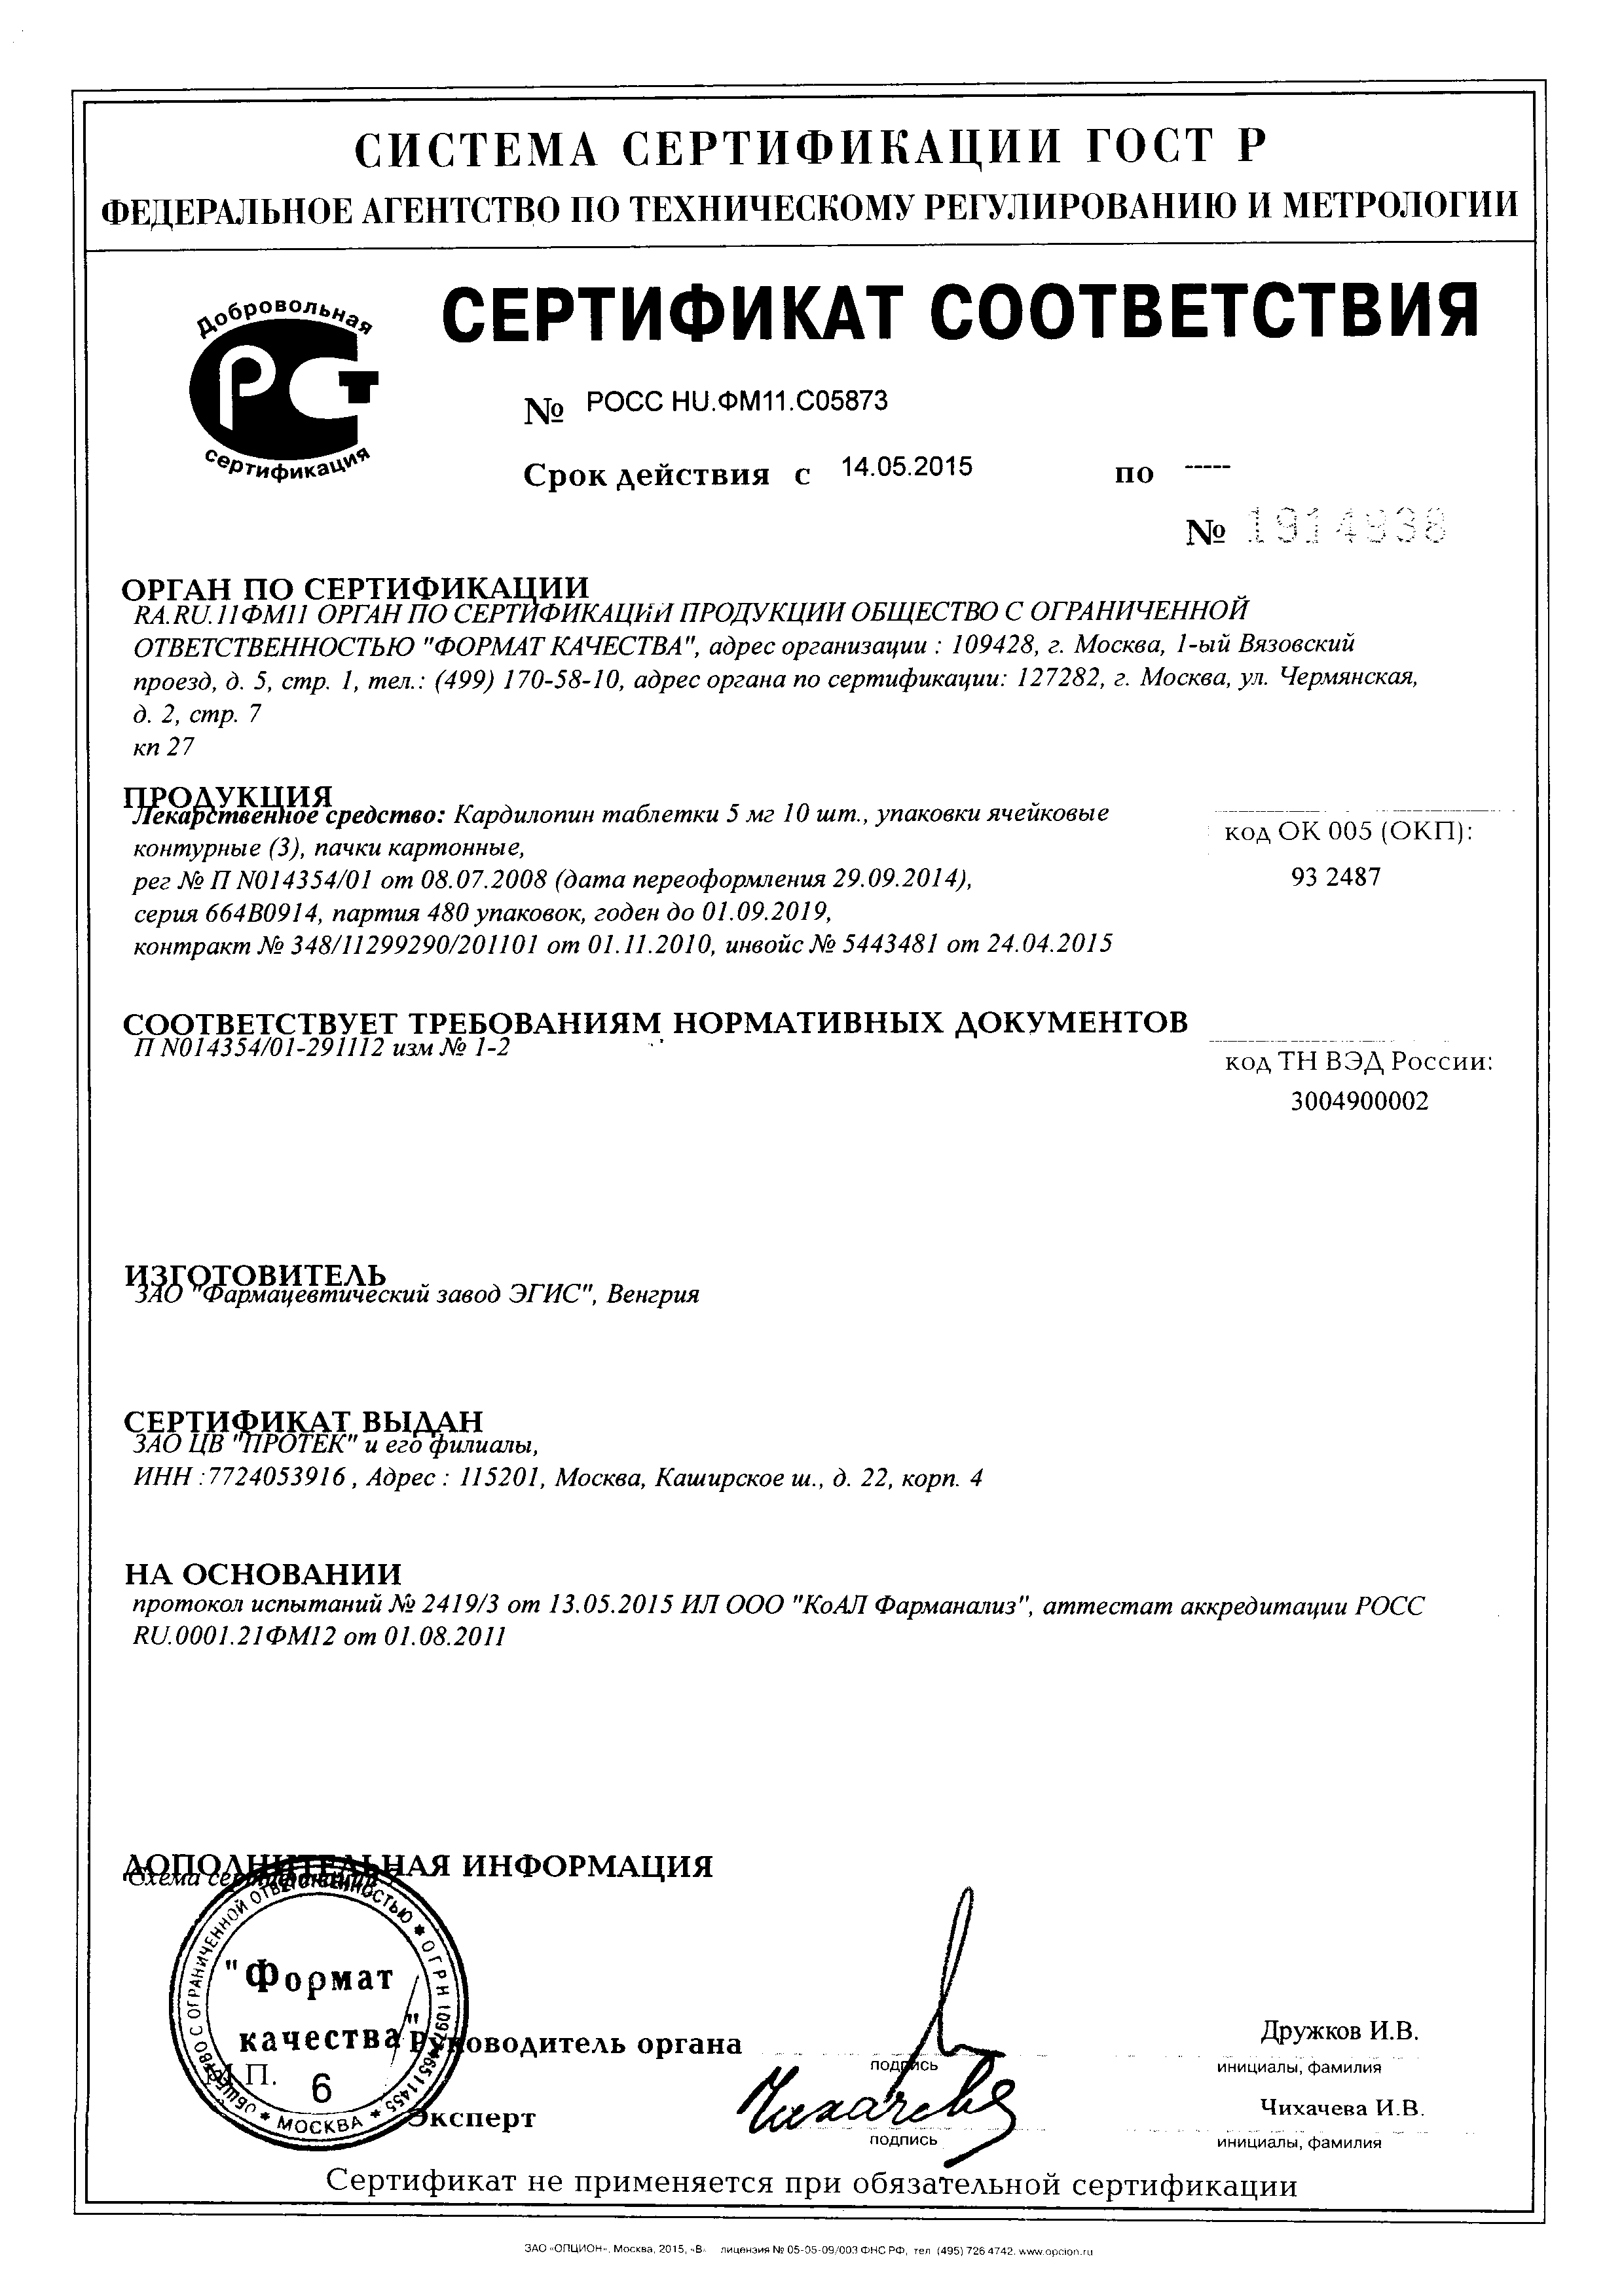 Кардилопин сертификат